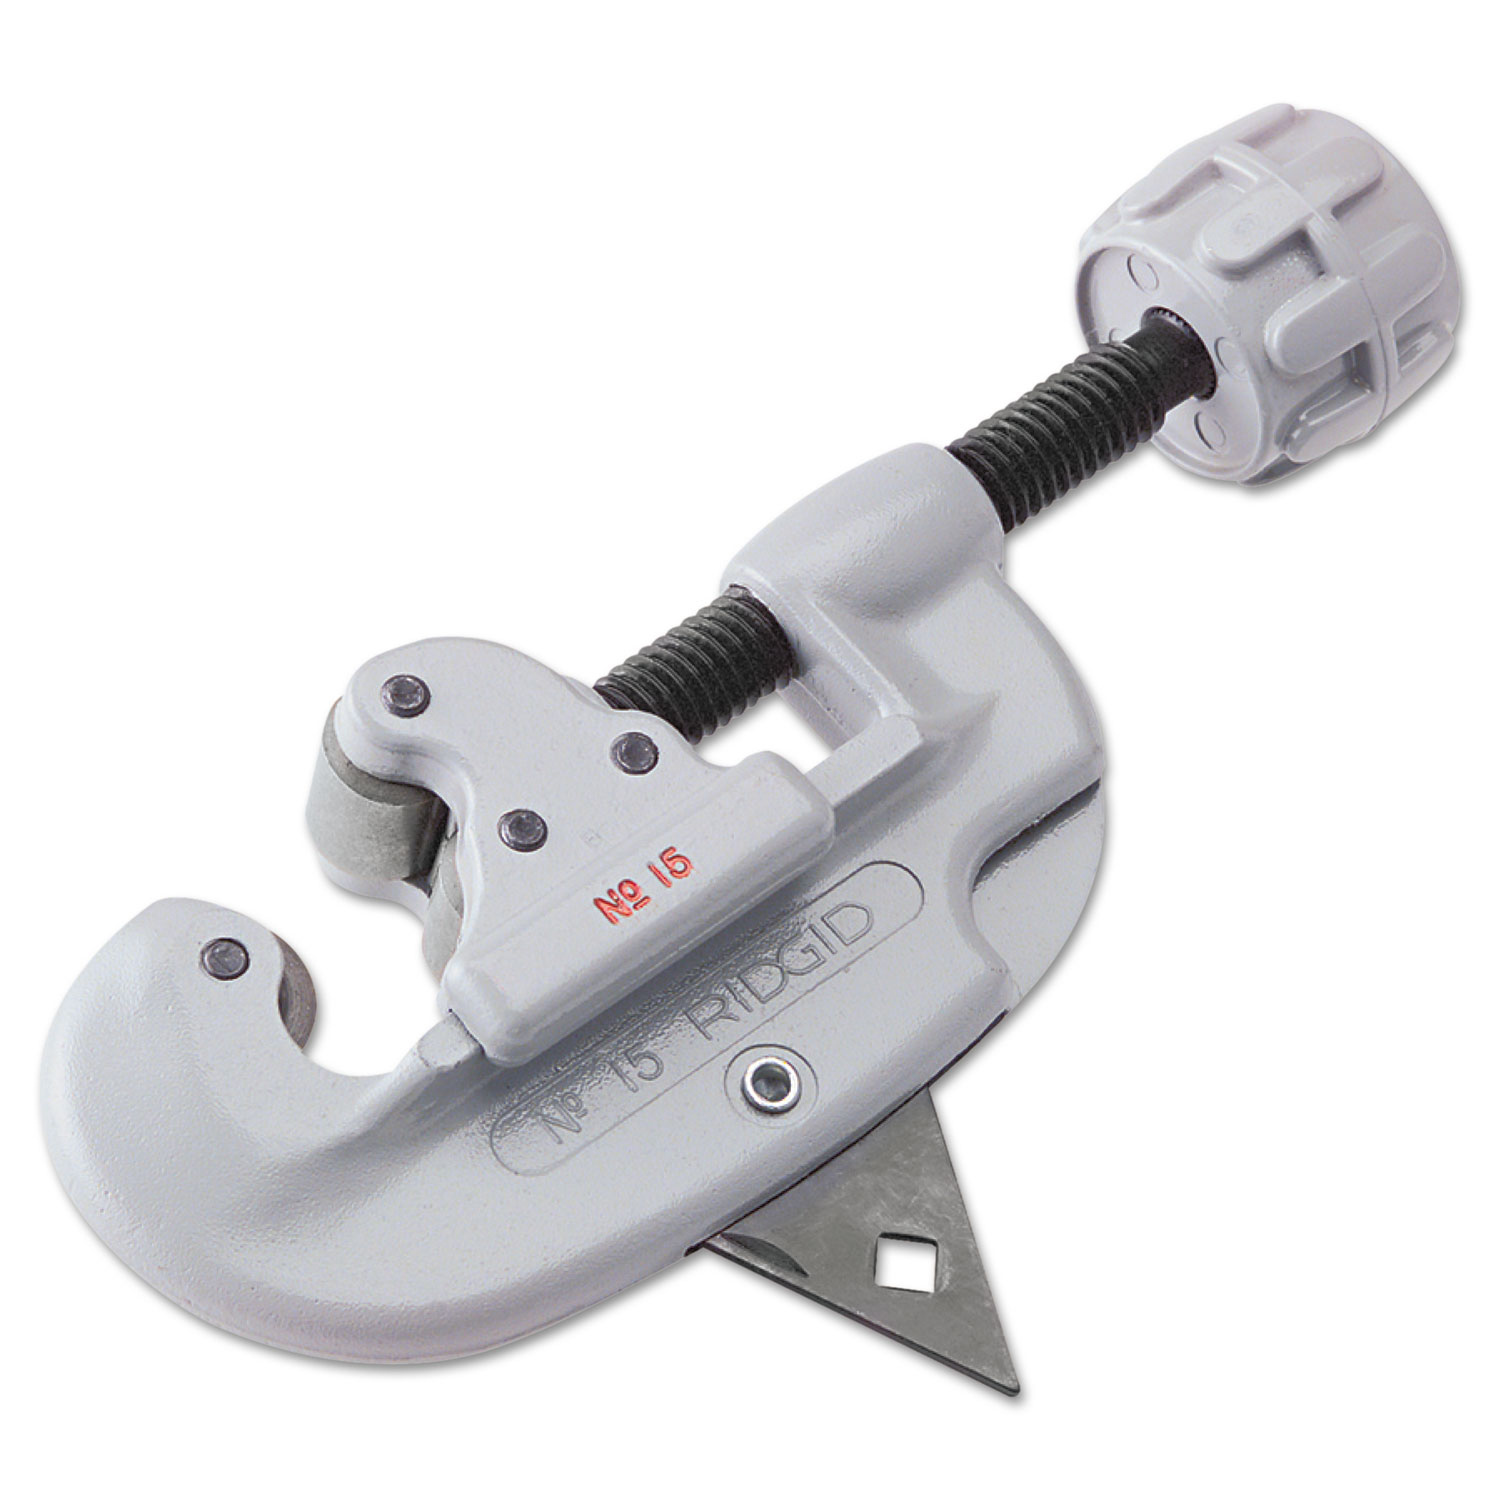 Model 15 Tubing & Conduit Cutter, 5 Tool Length, 3/16 1 1/8 Cut Capacity